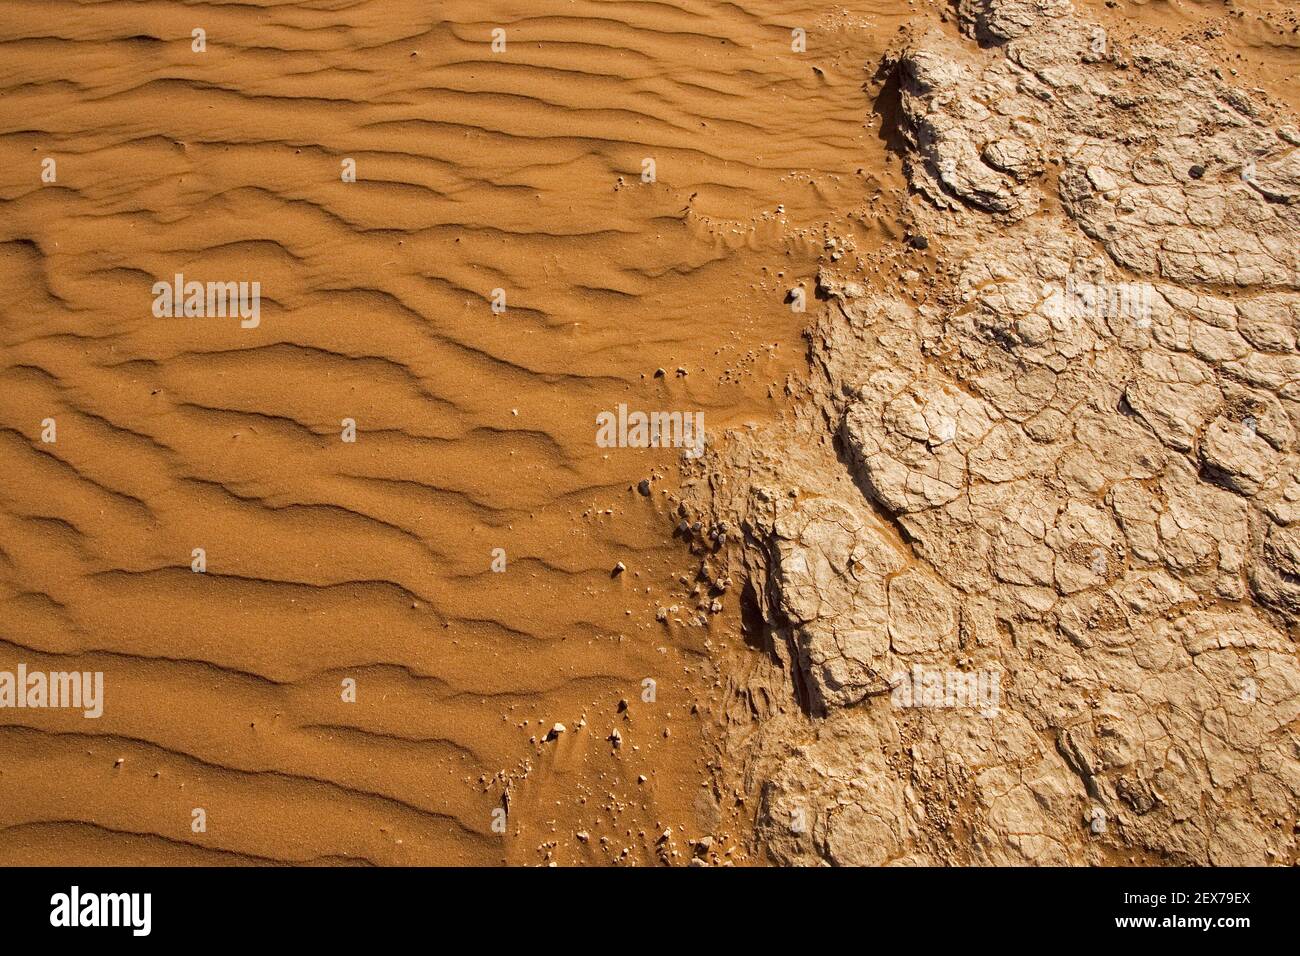 Structures avec sable et loam sec, désert du Namib, Namibie, structures avec sable et loam sec dans le désert du Namib, Afrique Banque D'Images